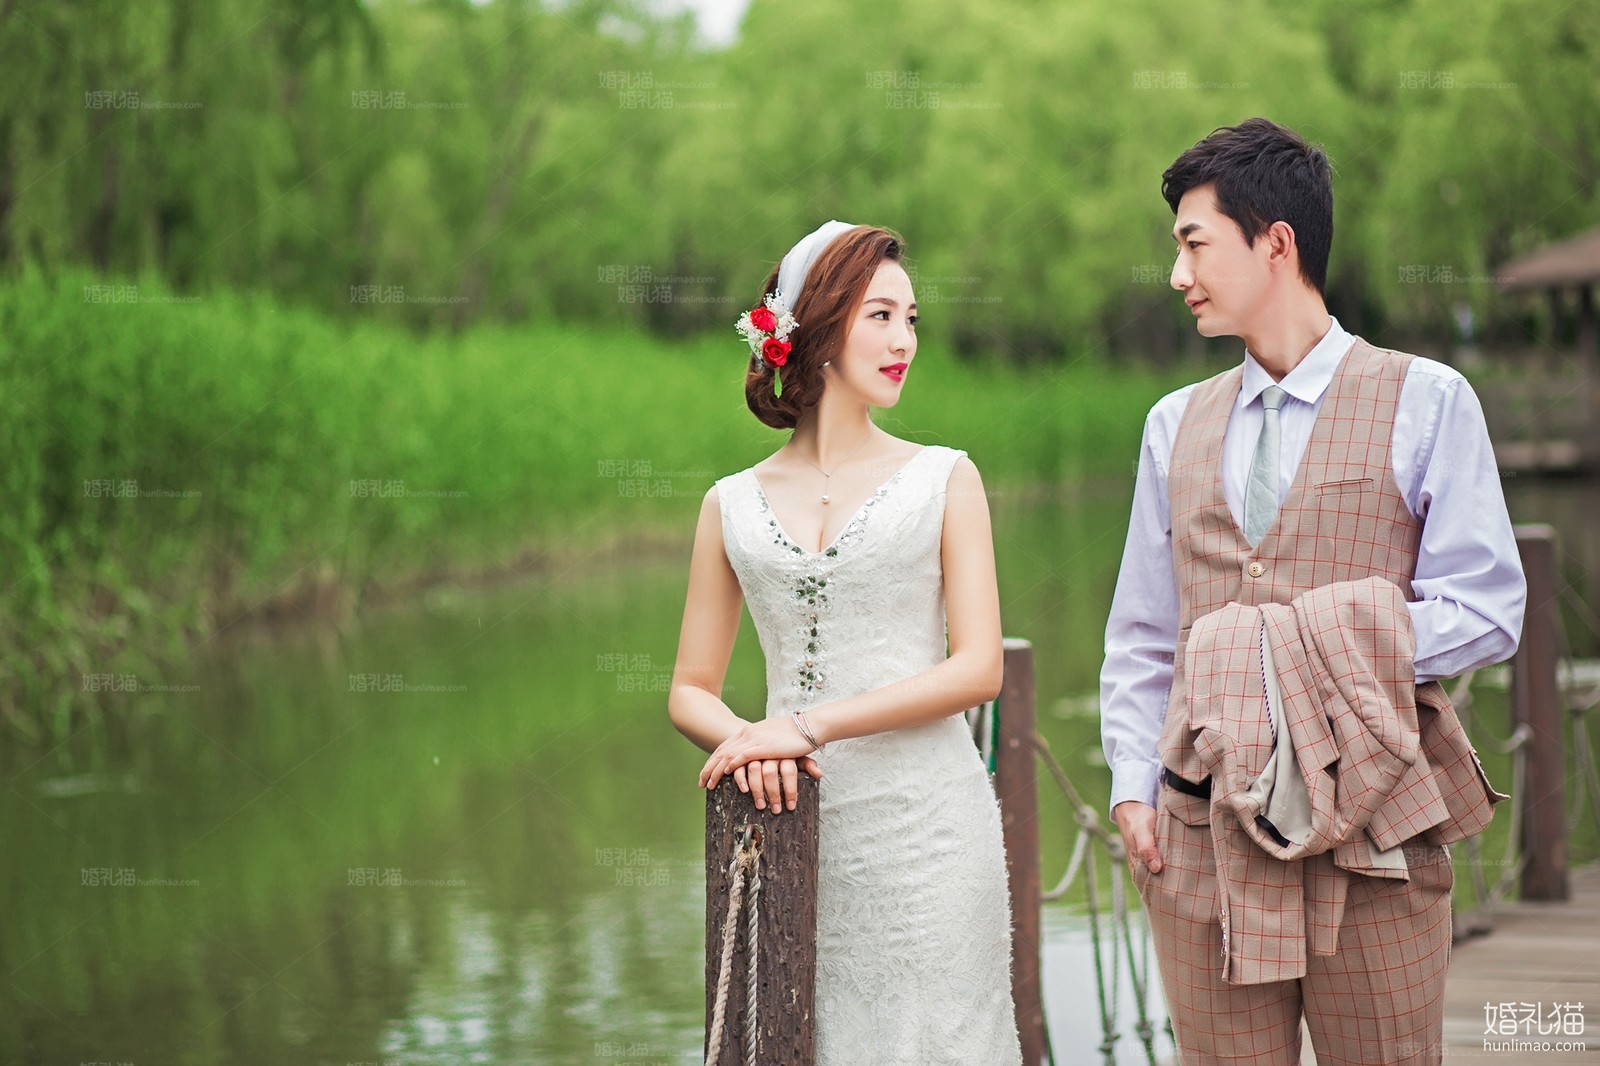 森系婚纱照|湖景婚纱摄影,[湖景, 森系],上海婚纱照,婚纱照图片